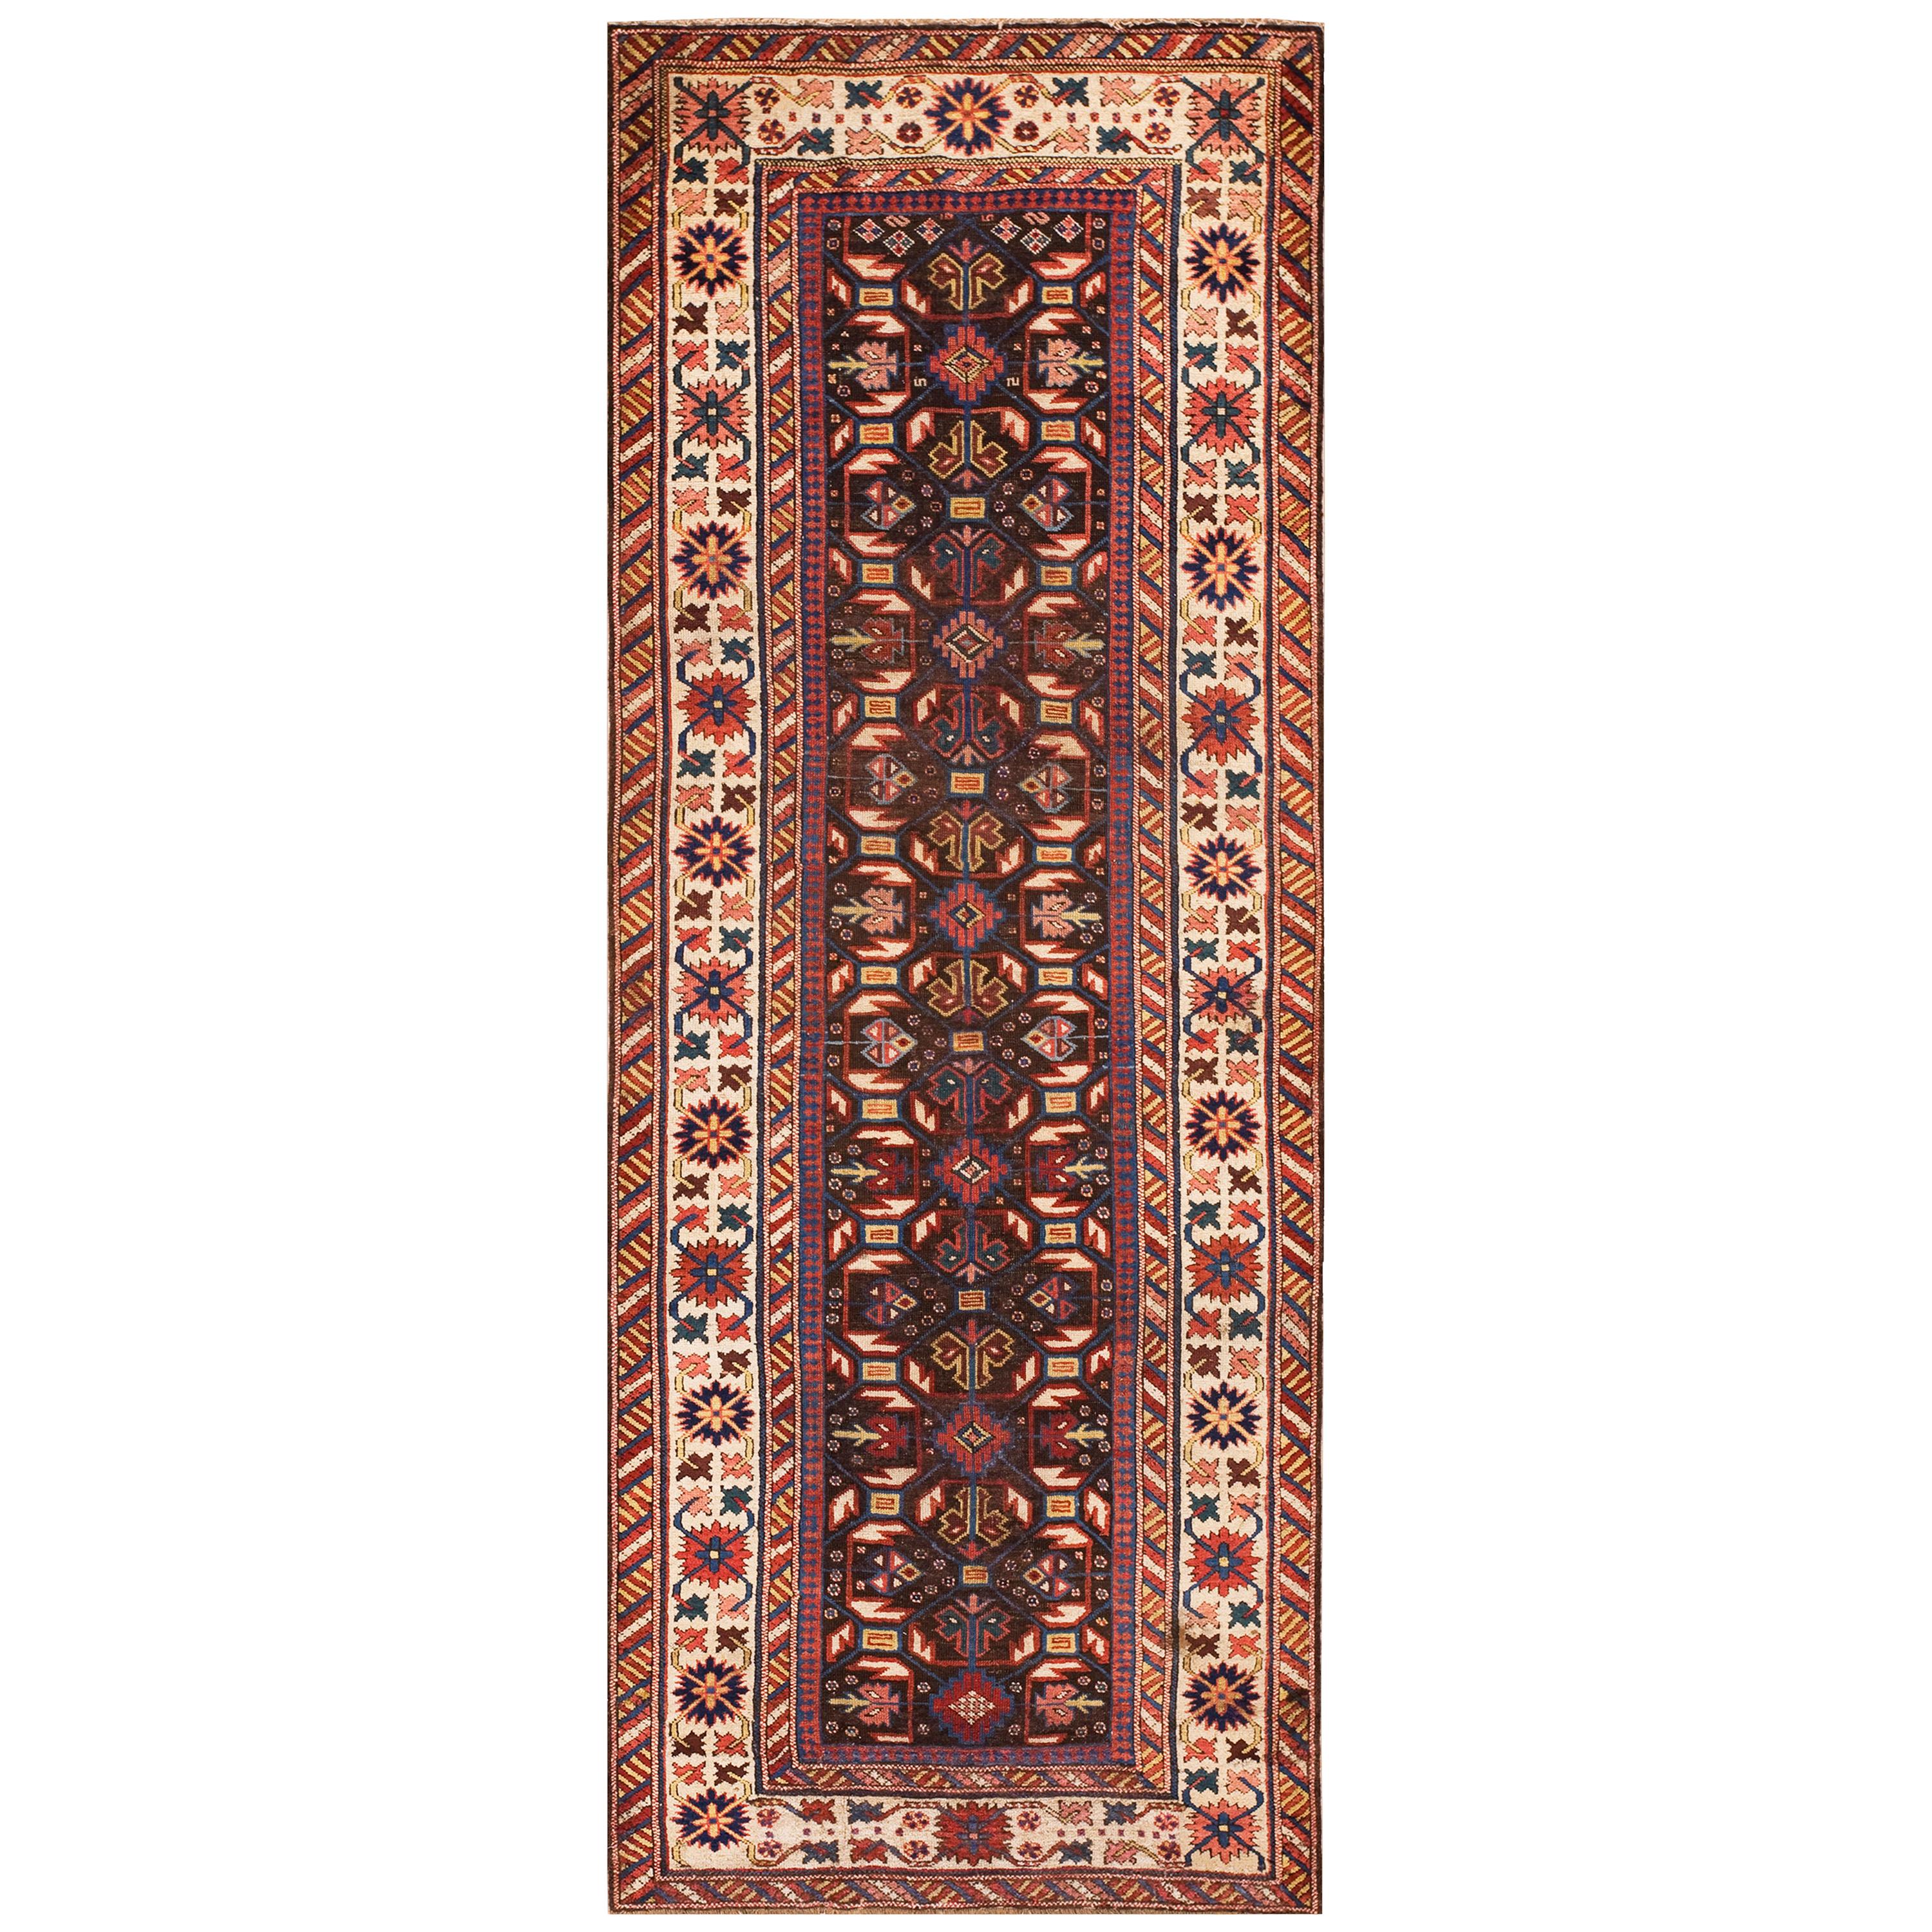 19th Century Caucasian Shirvan Carpet ( 3'2" x 8' - 96 x 244 )